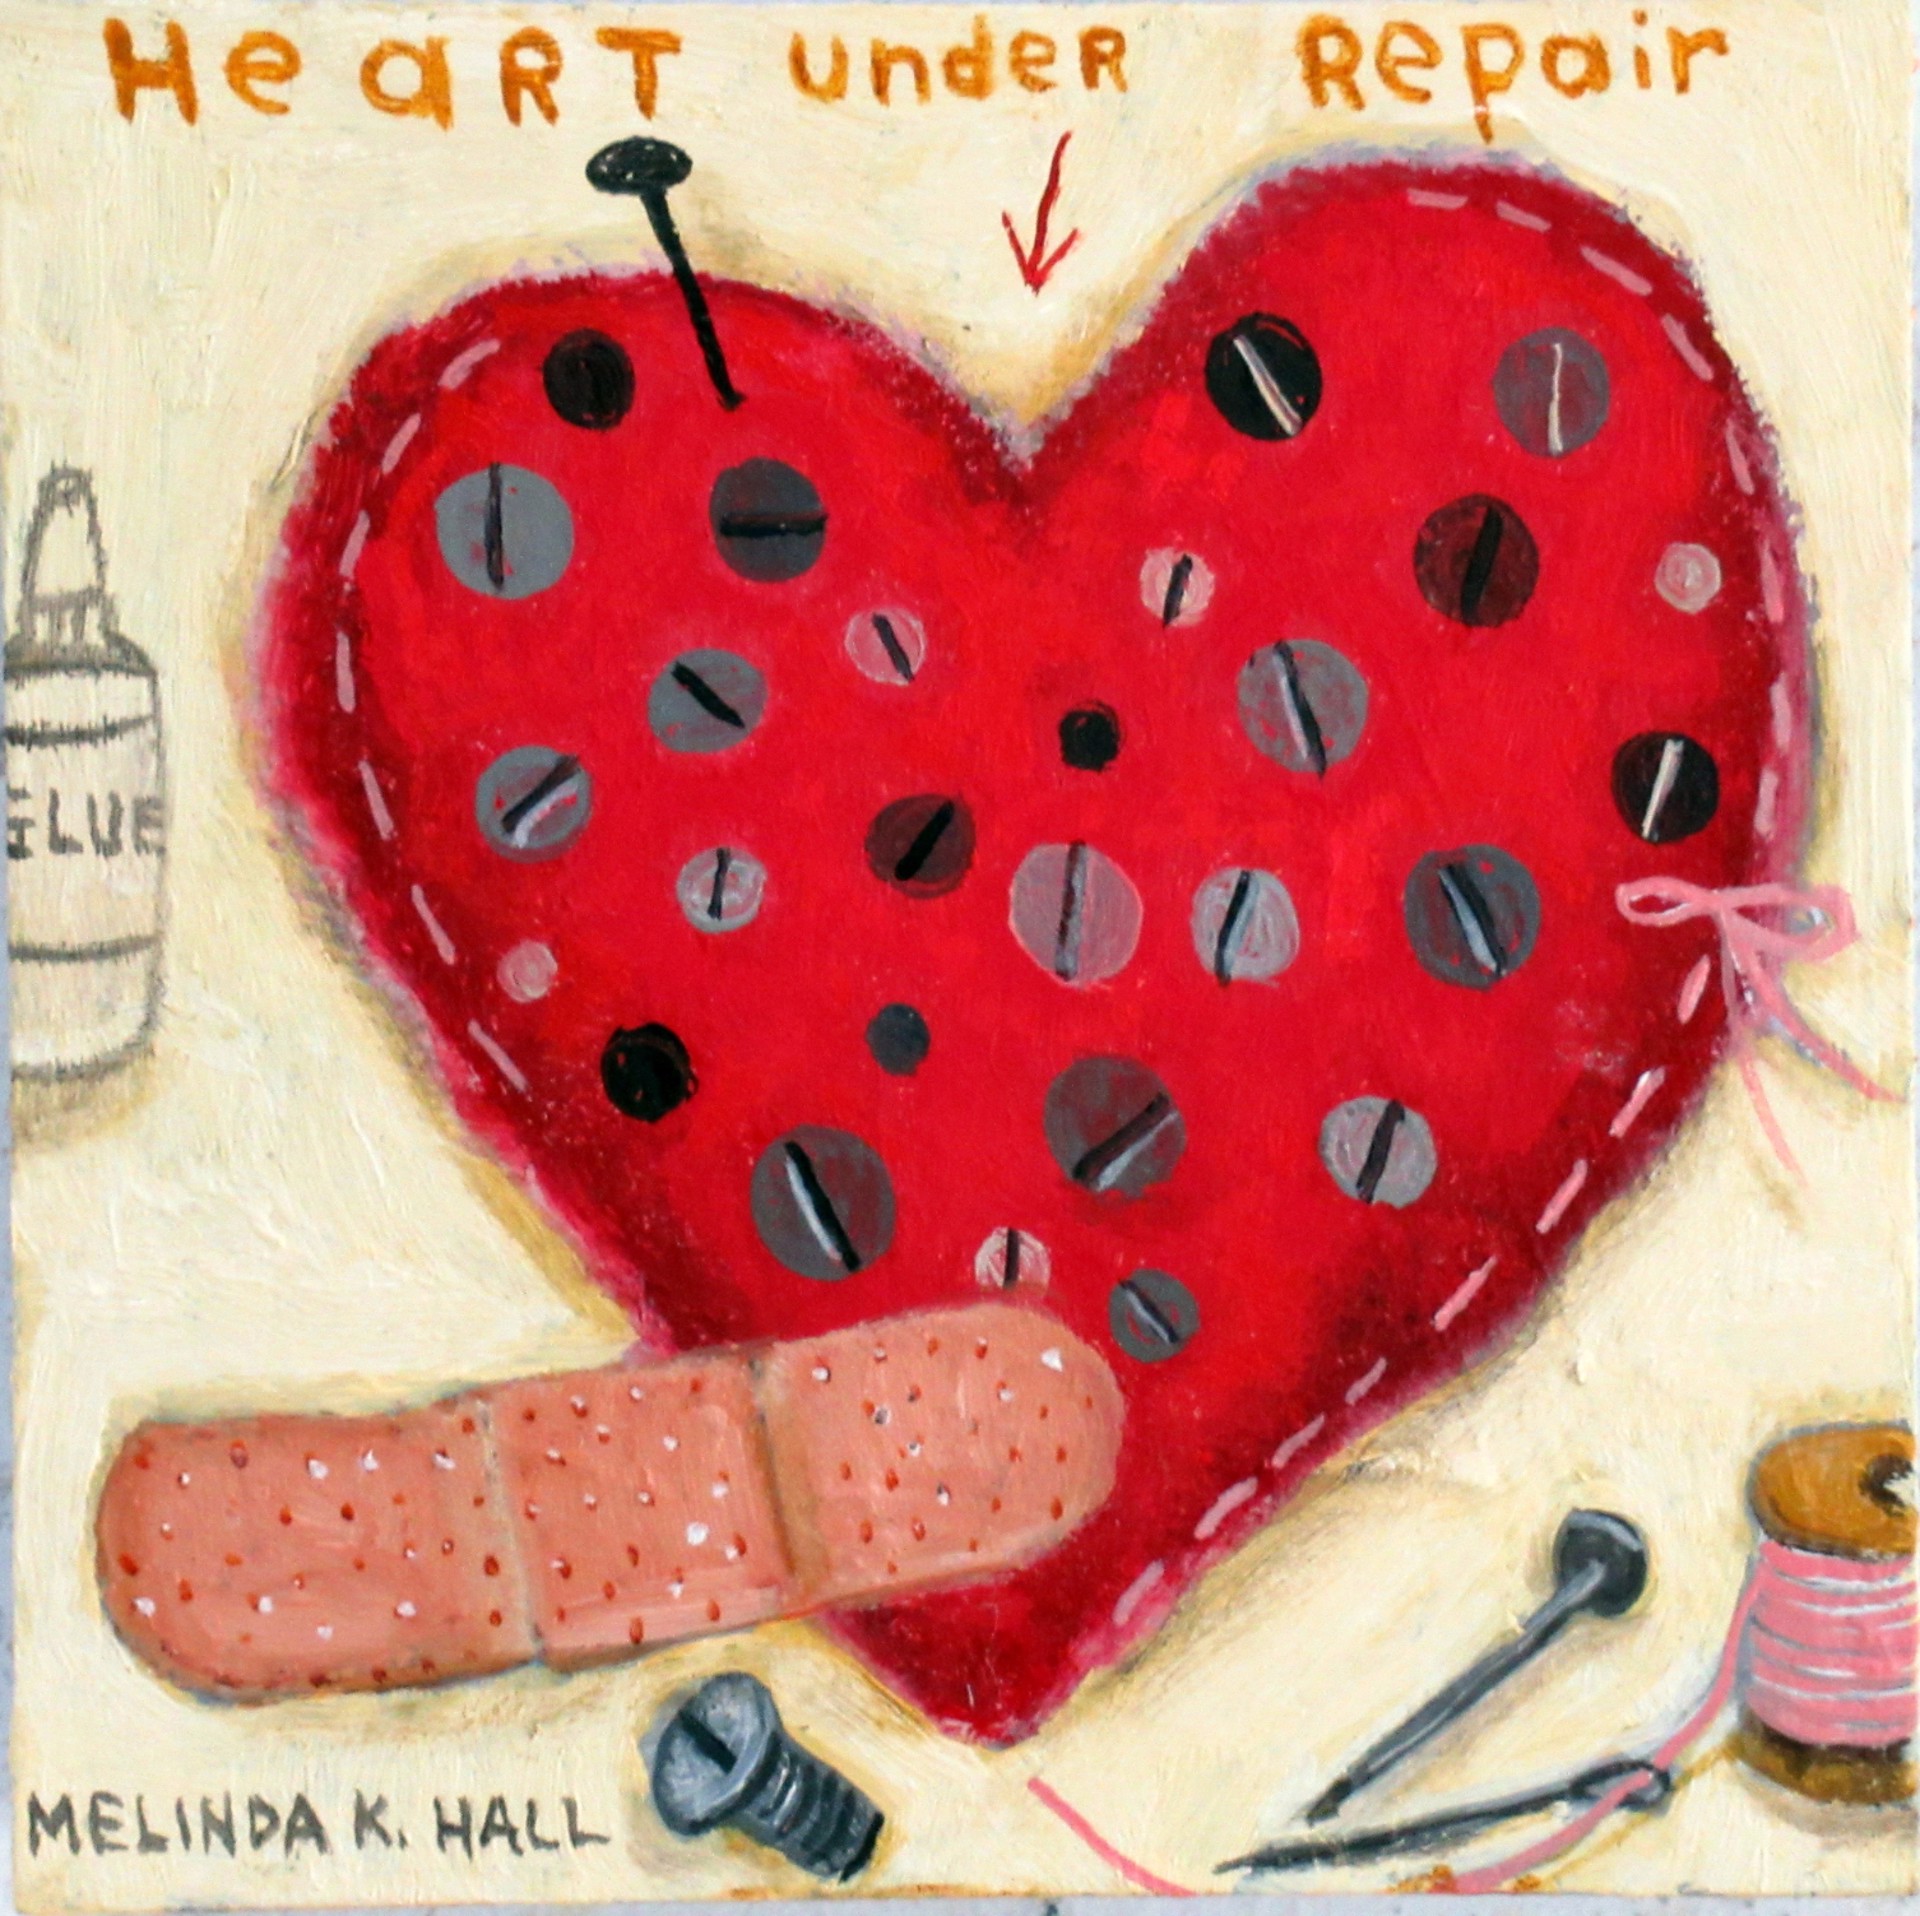 Heart Under Repair by Melinda K. Hall